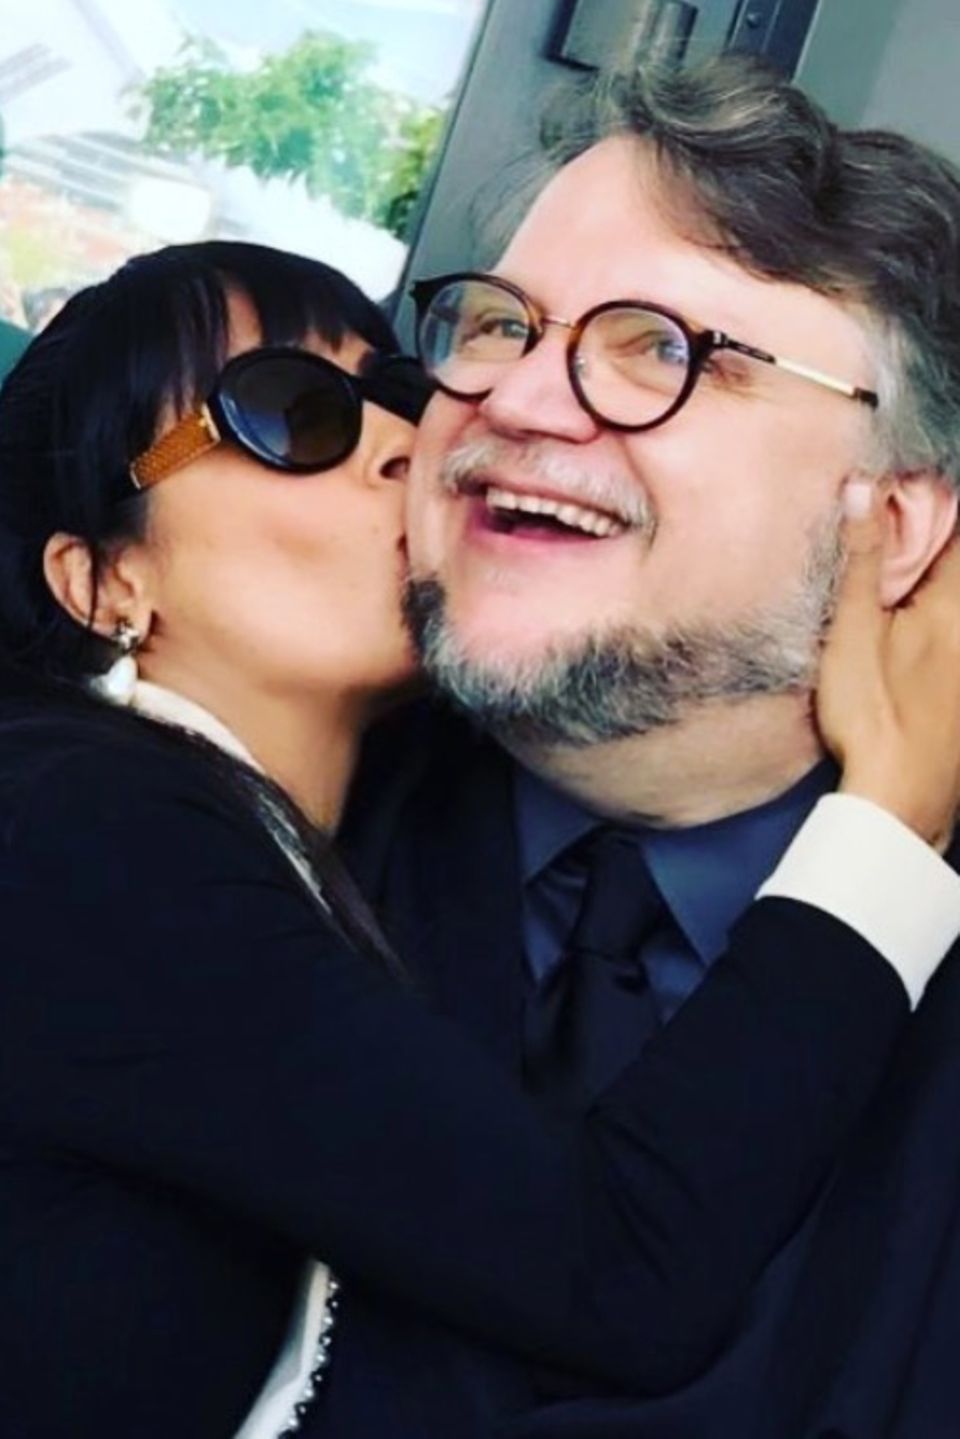 Salma Hayek und Guillermo del Toro haben sich lieb: Zum Geburtstag des Regisseurs teilt die Schauspielerin dieses innige Foto.